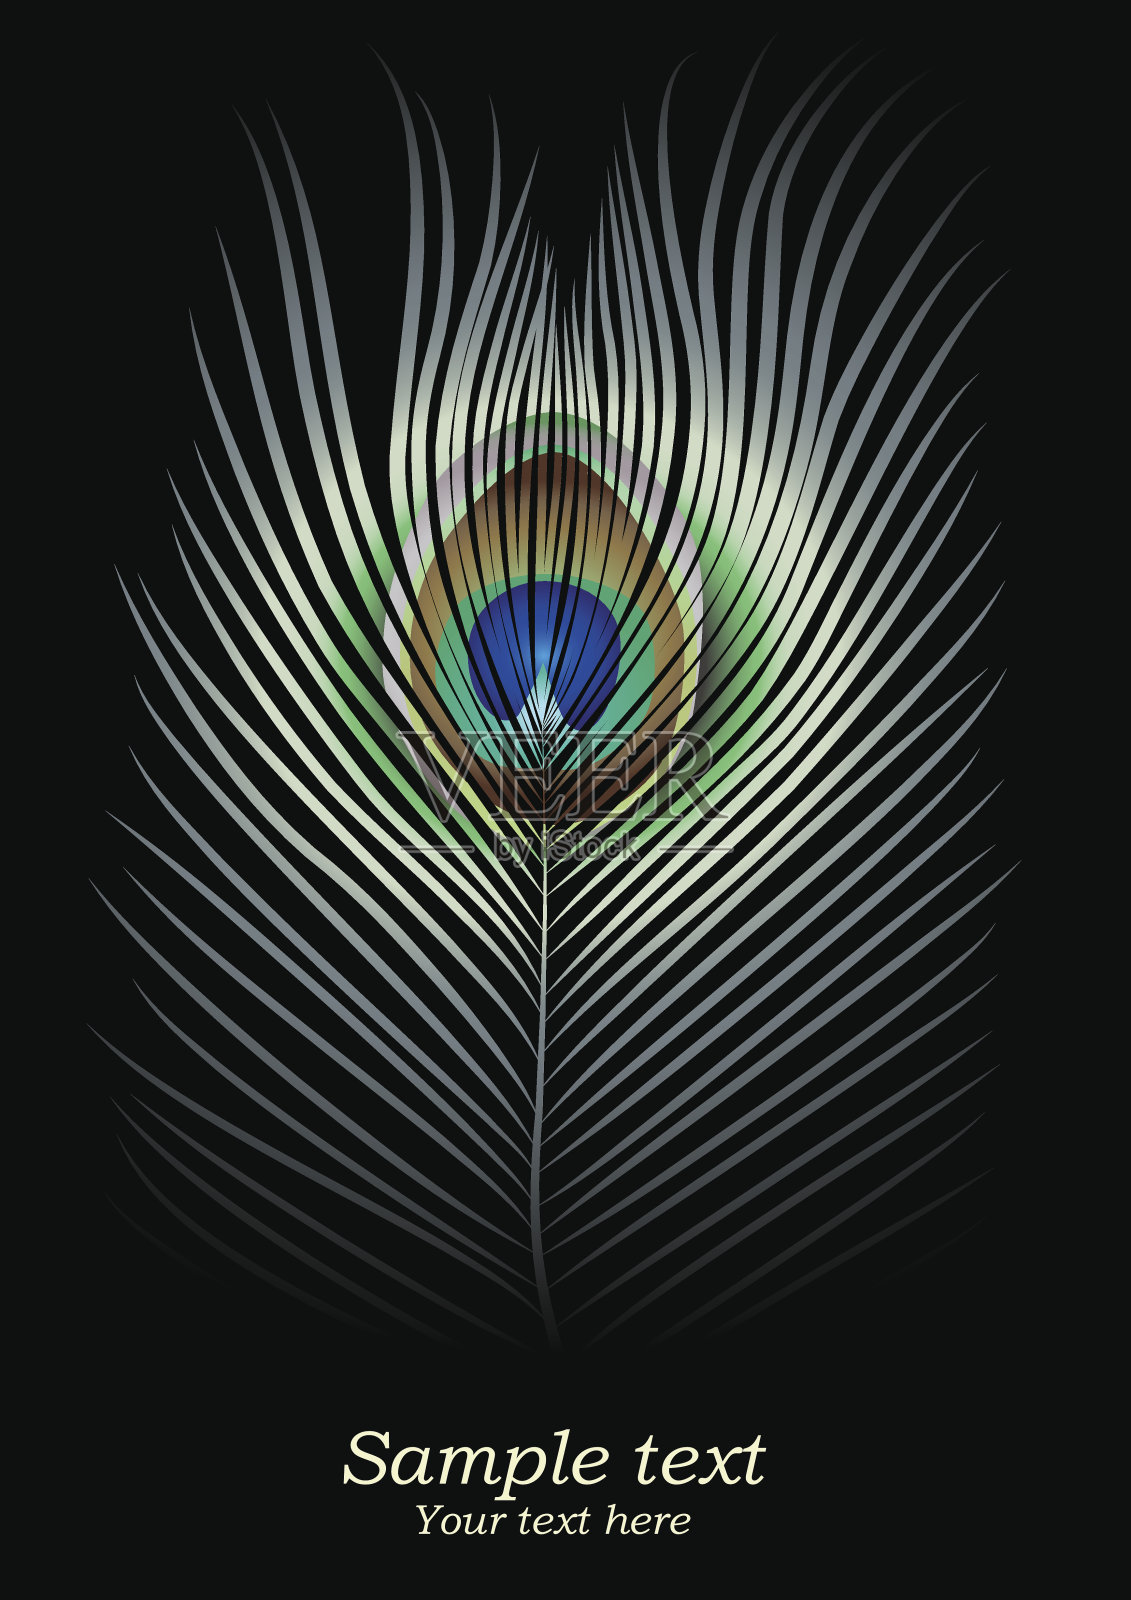 色彩斑斓的孔雀羽毛插画图片素材